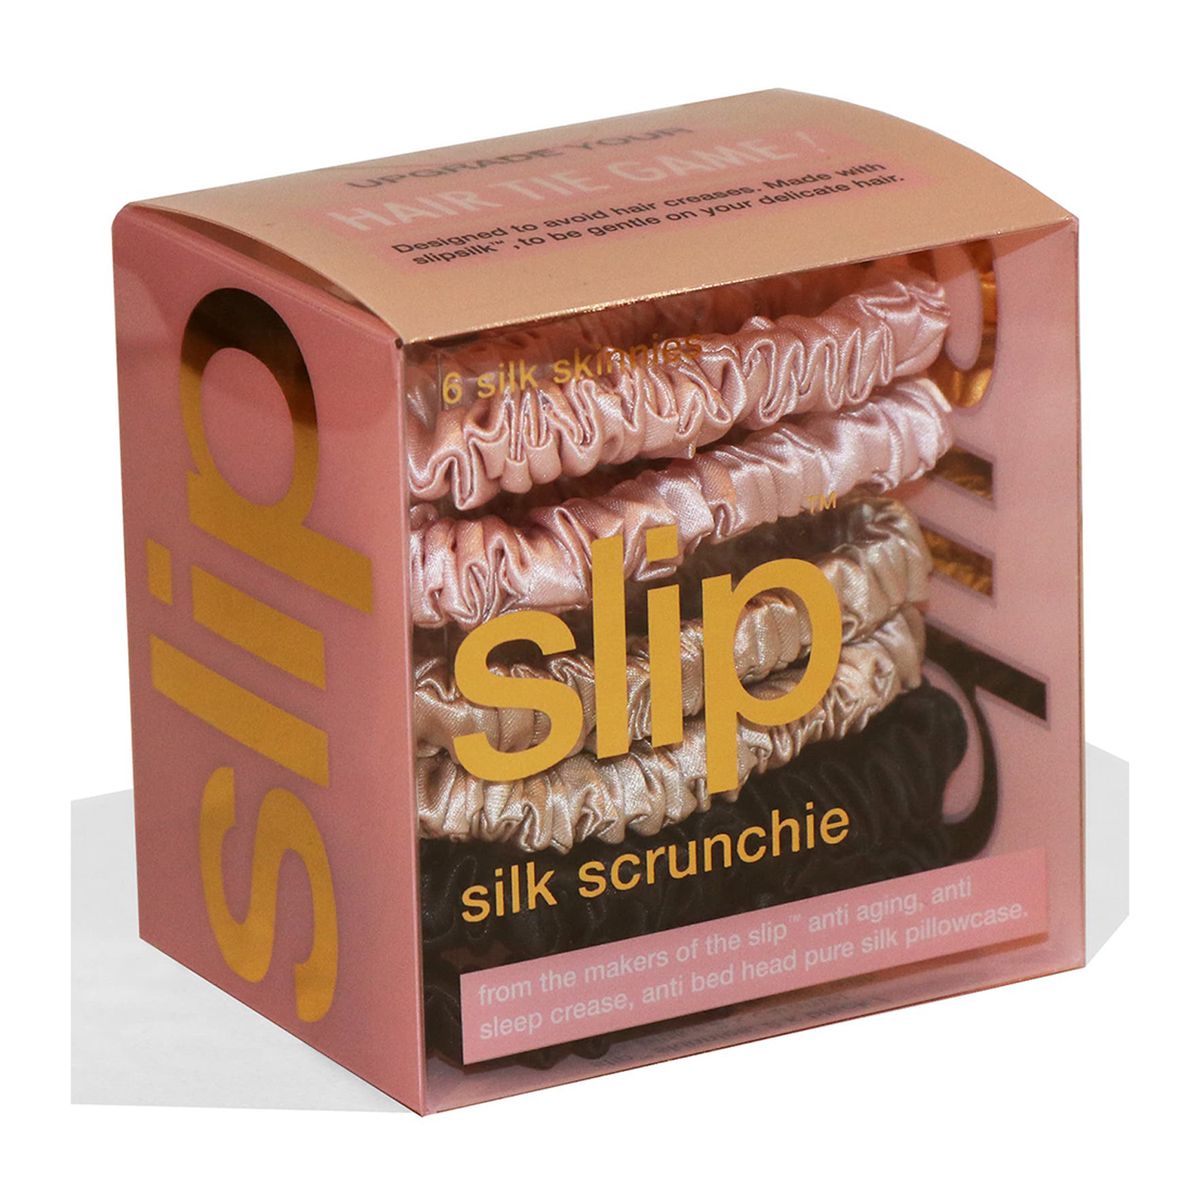 Slip silk scrunchie